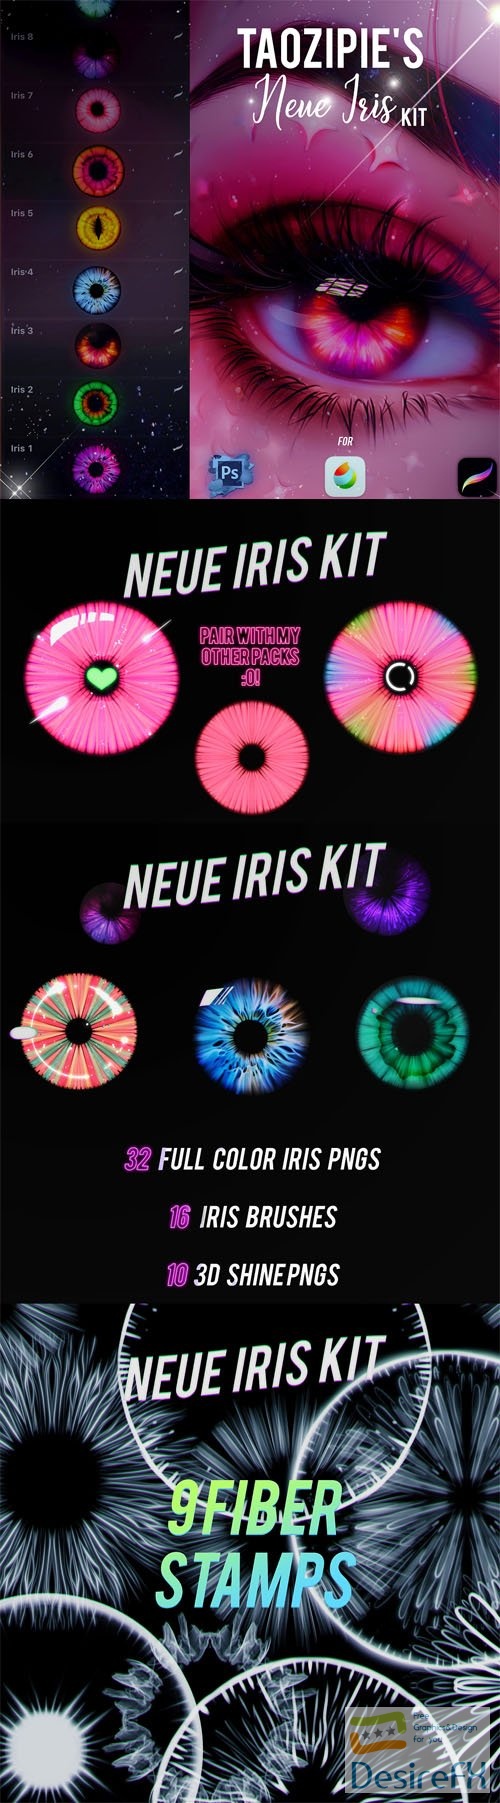 Iris Kit - Brushes Pack for Photoshop/Procreate/Medibang